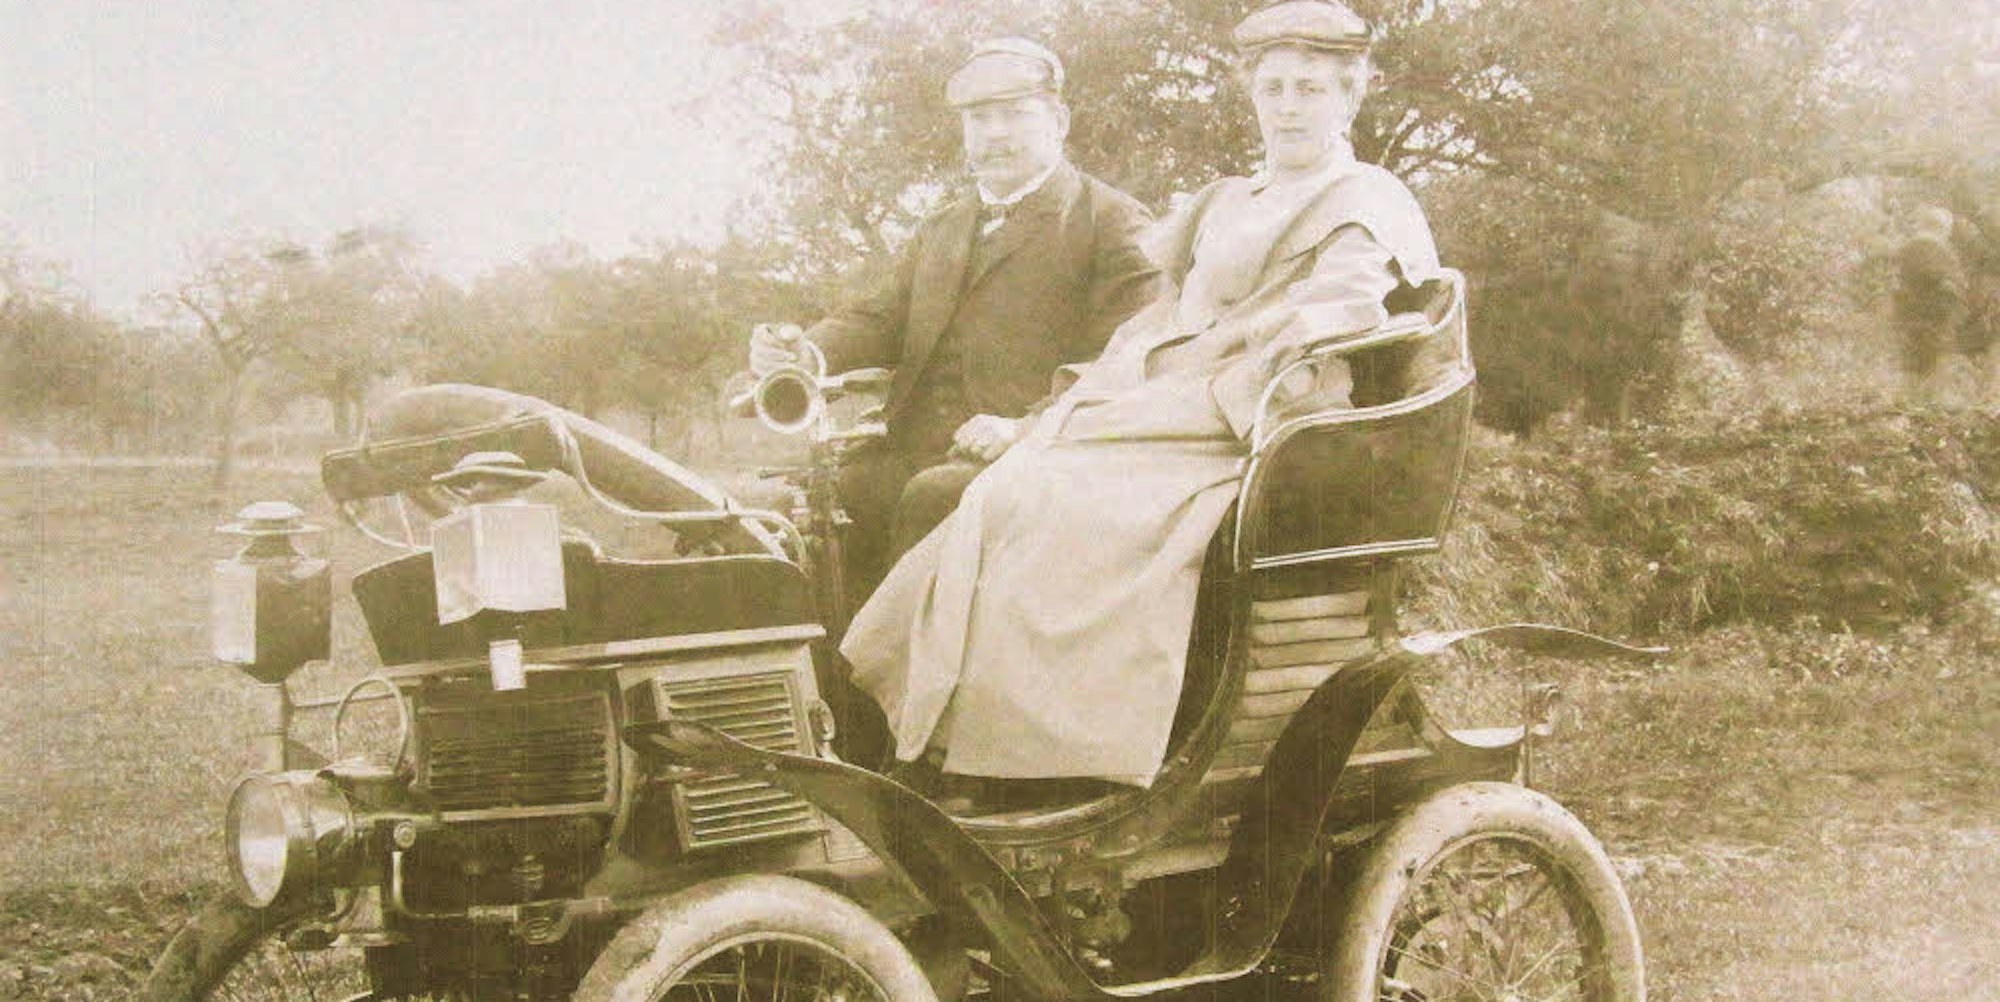 Der Motorwagen mit den unbekannten Erstbesitzern.